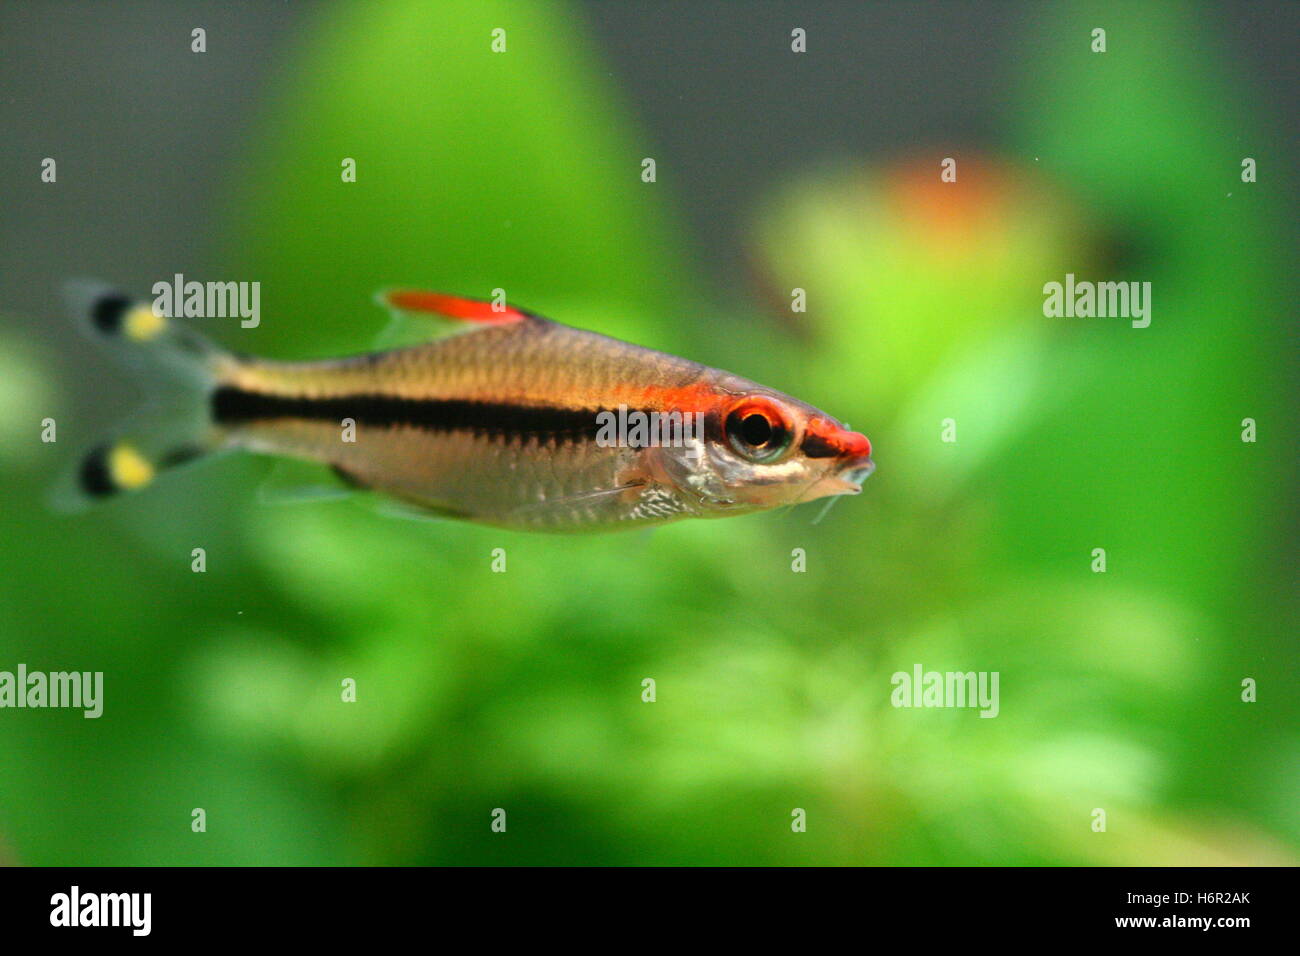 Les poissons d'aquarium l'asiatique asie barbillon torpille torpille rotfeuerfisch rotfeuerbarbe barben Banque D'Images